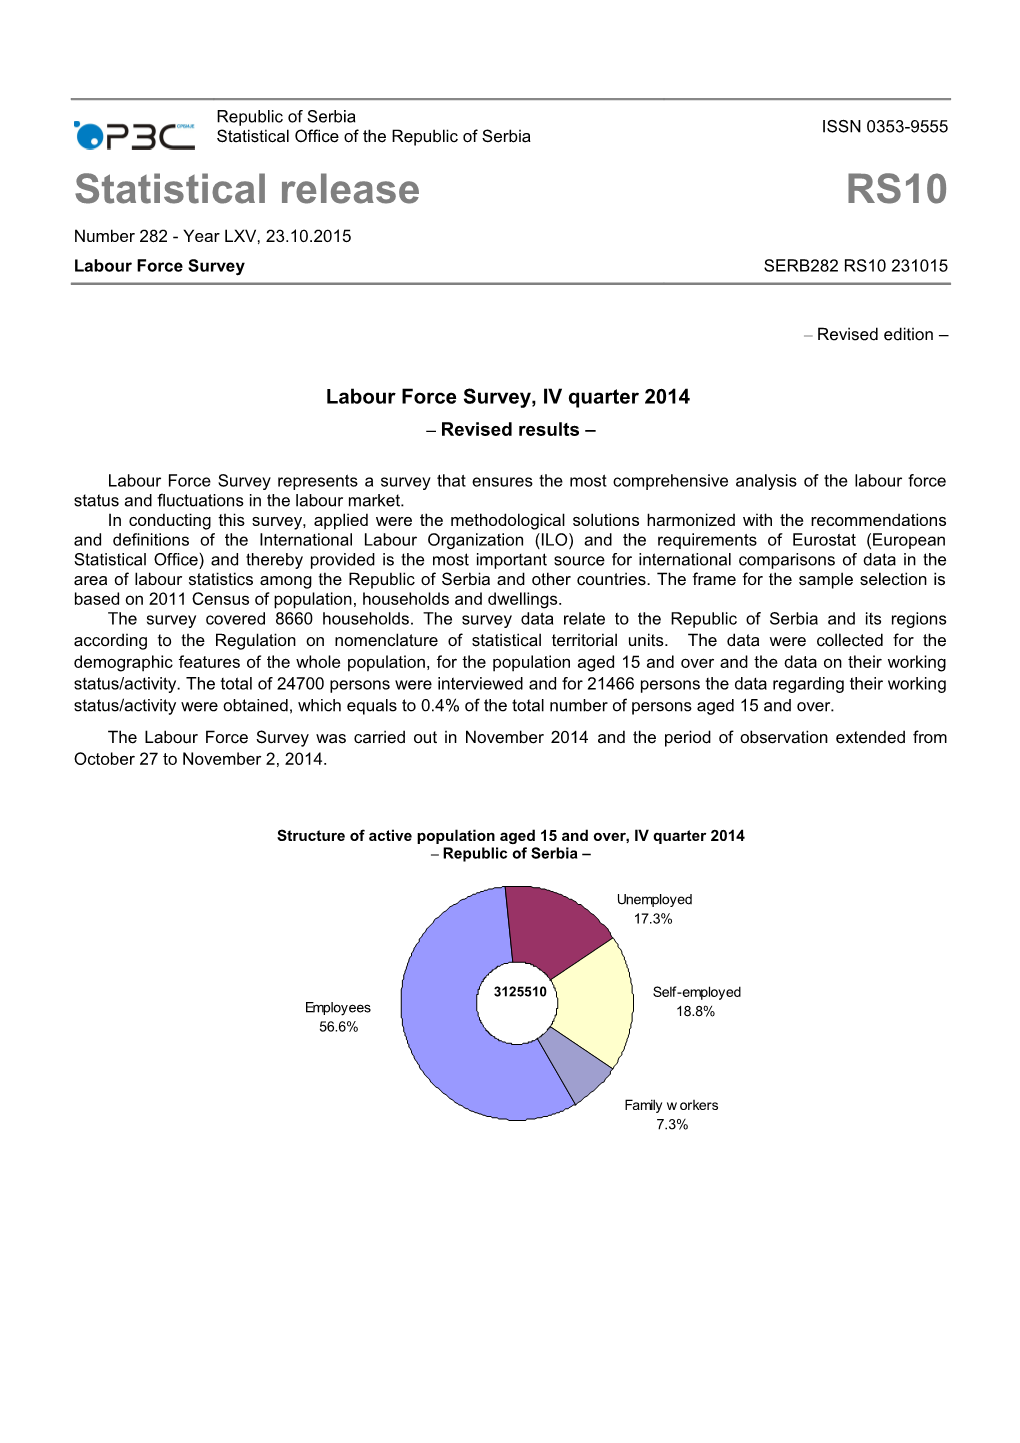 Labour Force Survey, IV Quarter 2014